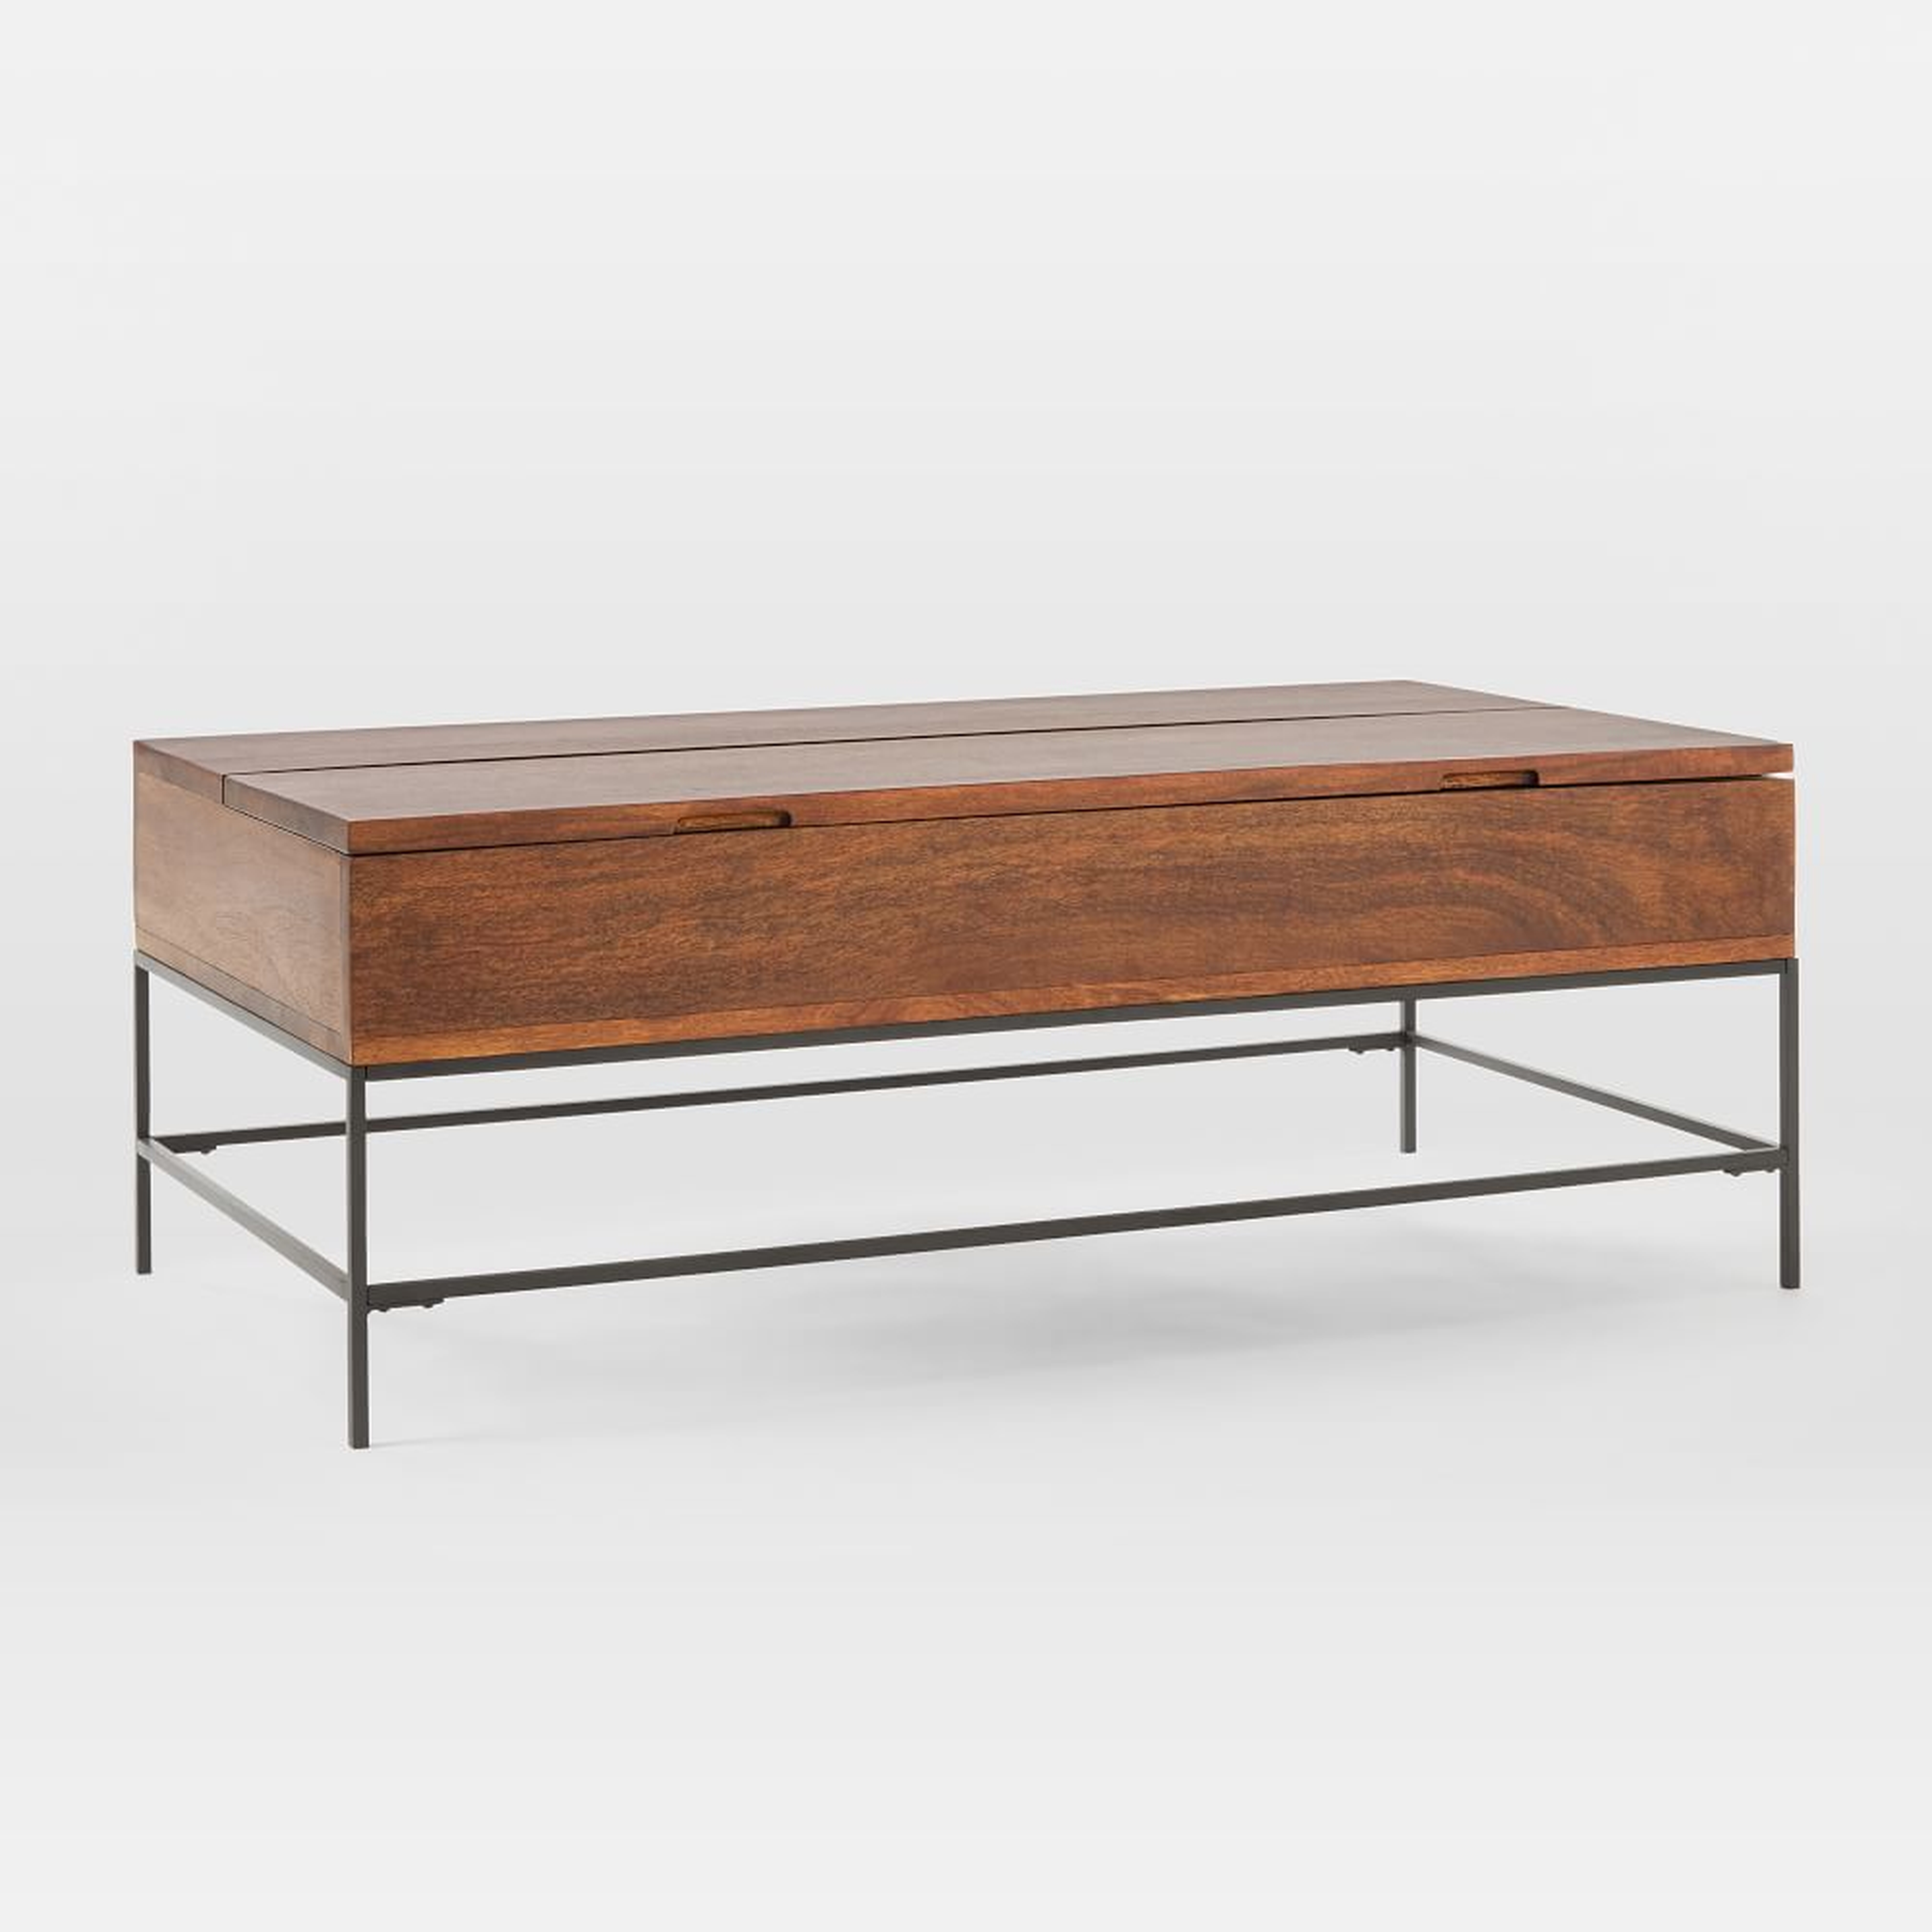 Industrial Storage Coffee Table, 50"x26", Mango Wood + Metal - West Elm